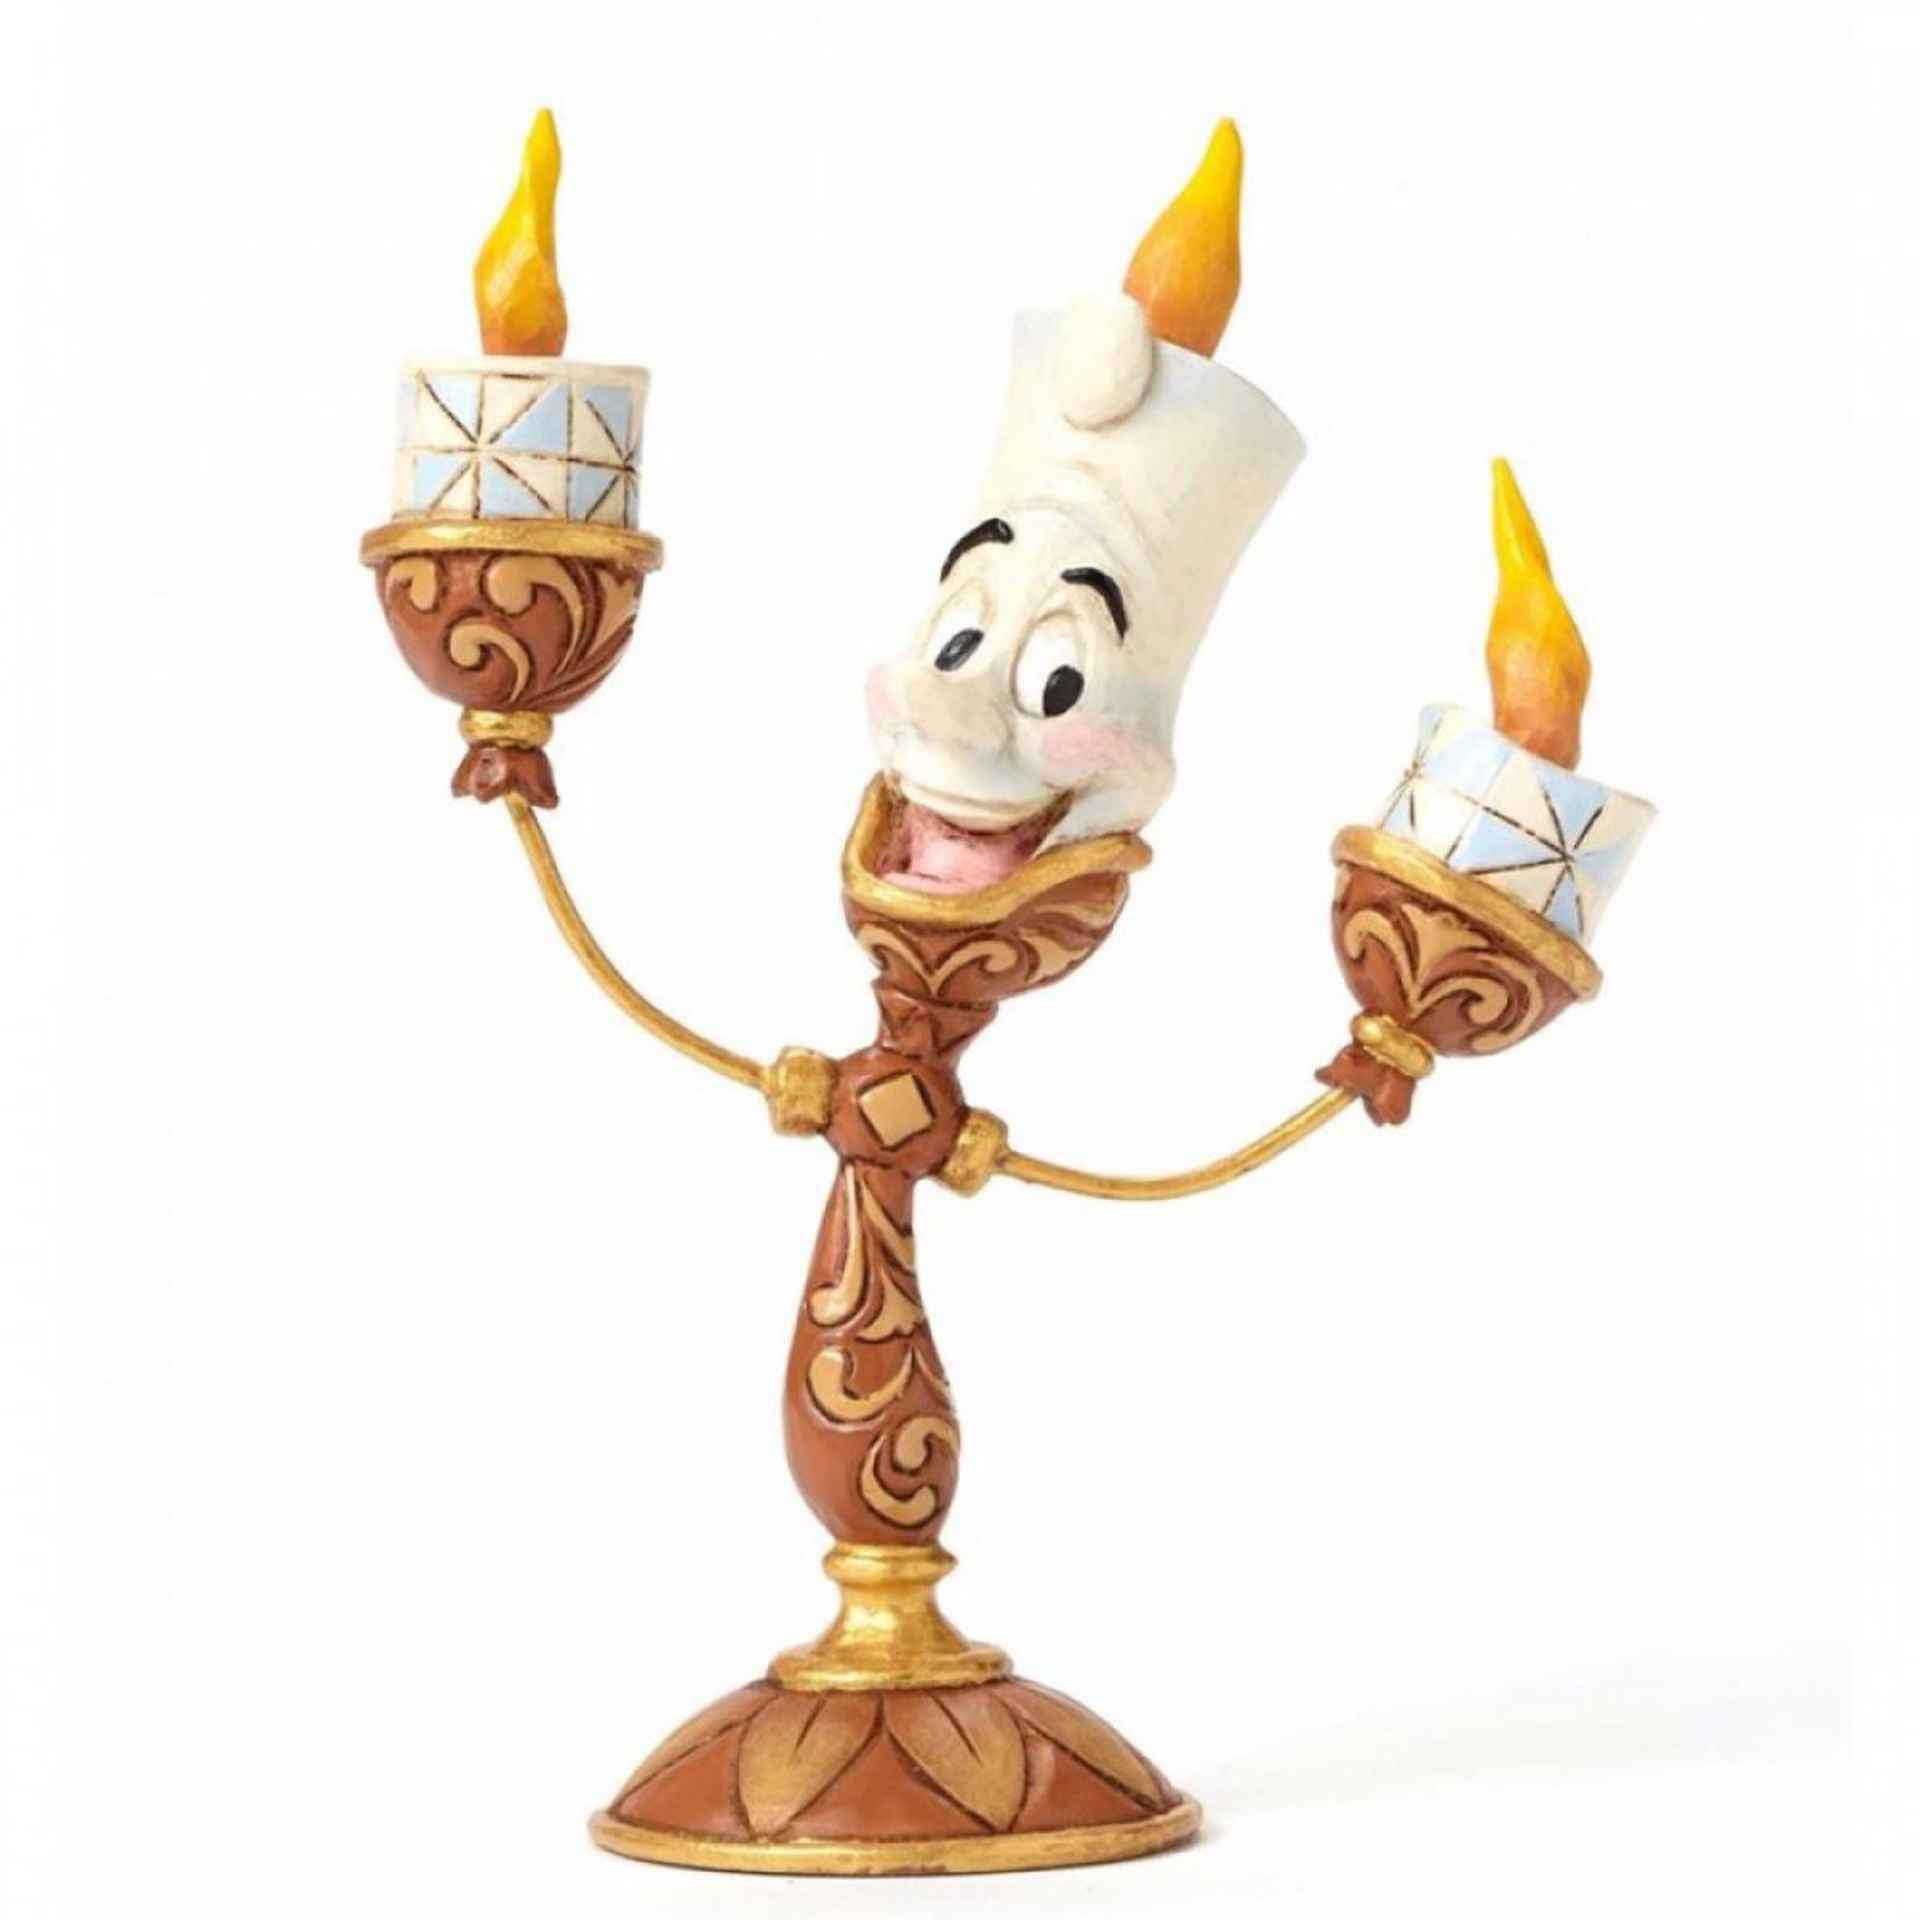 ENESCO - Disney La Belle et la Bête - Lumière "Oh lala" Figurine